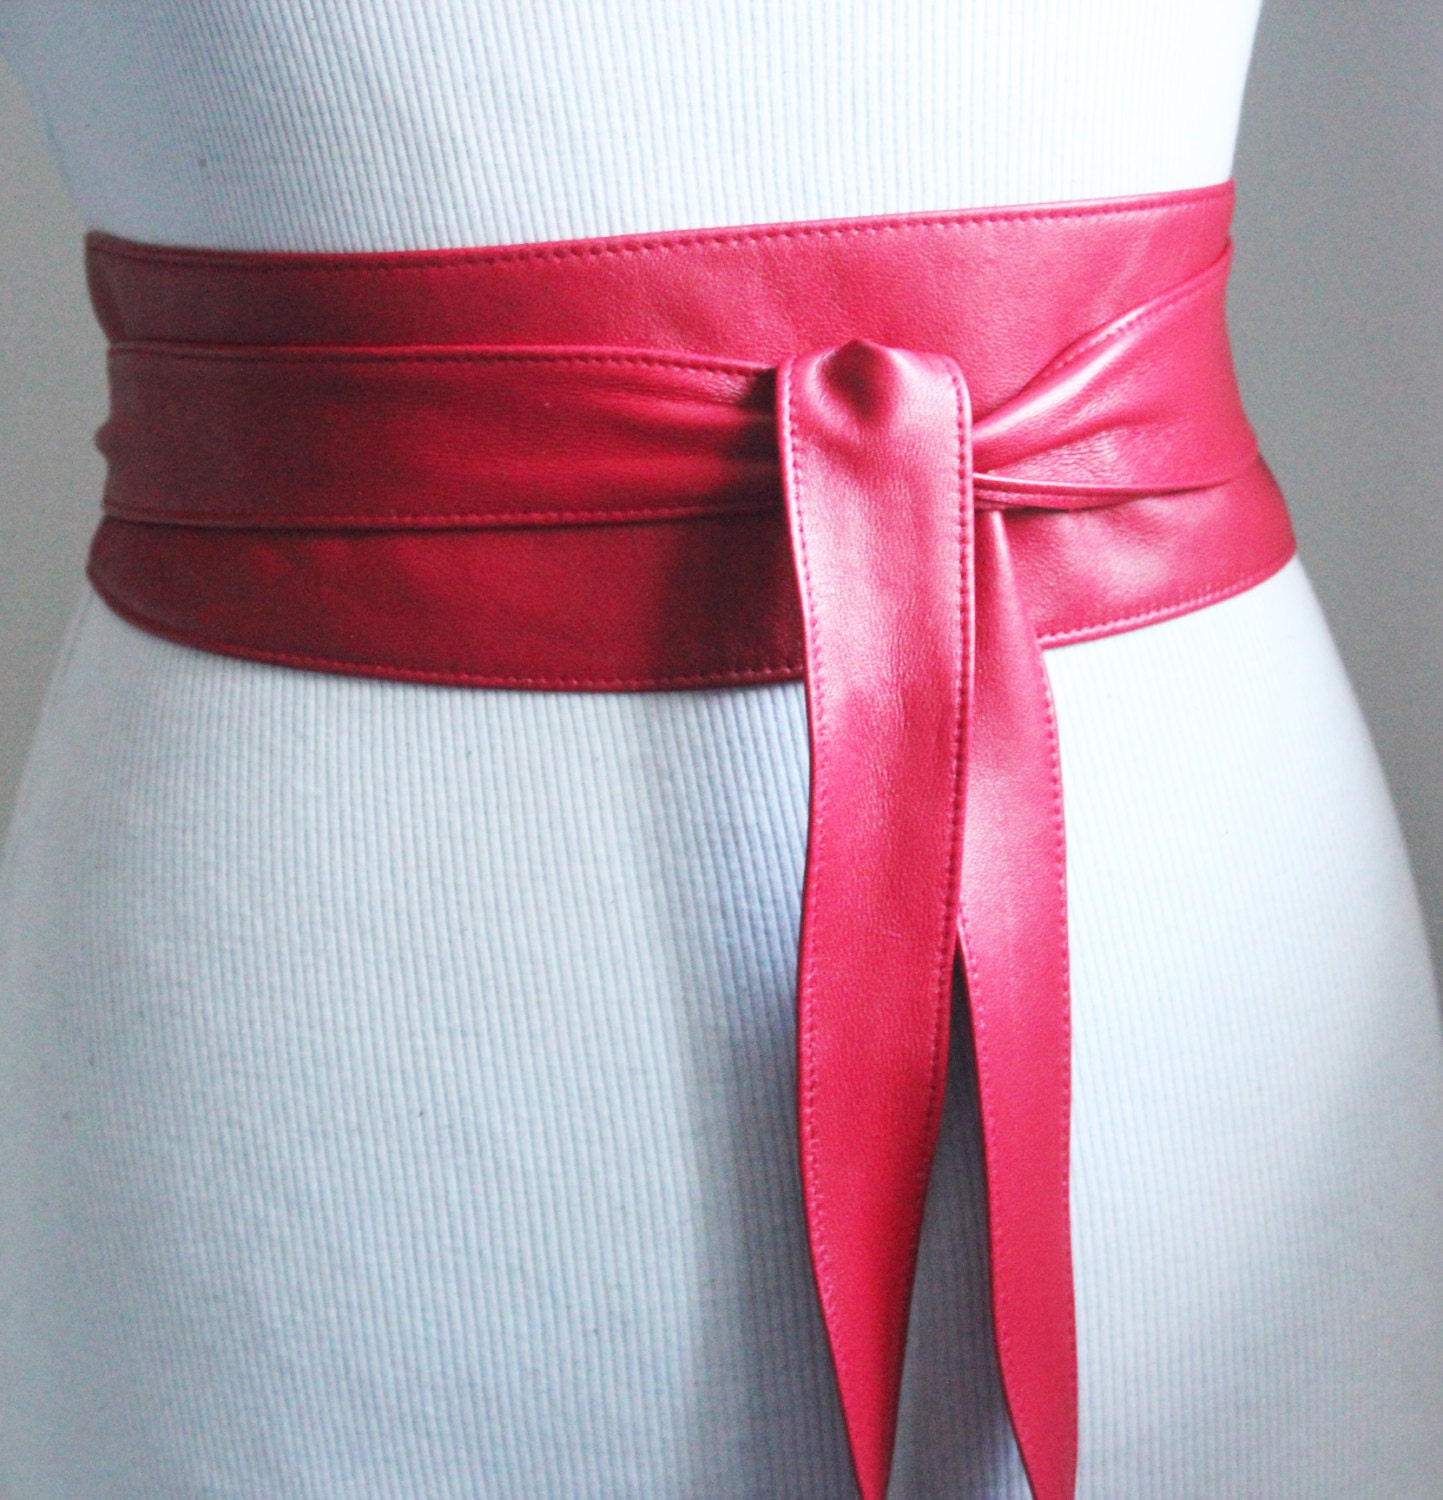 Red Leather Obi Belt Red Corset Belt Red Leather Sash belt